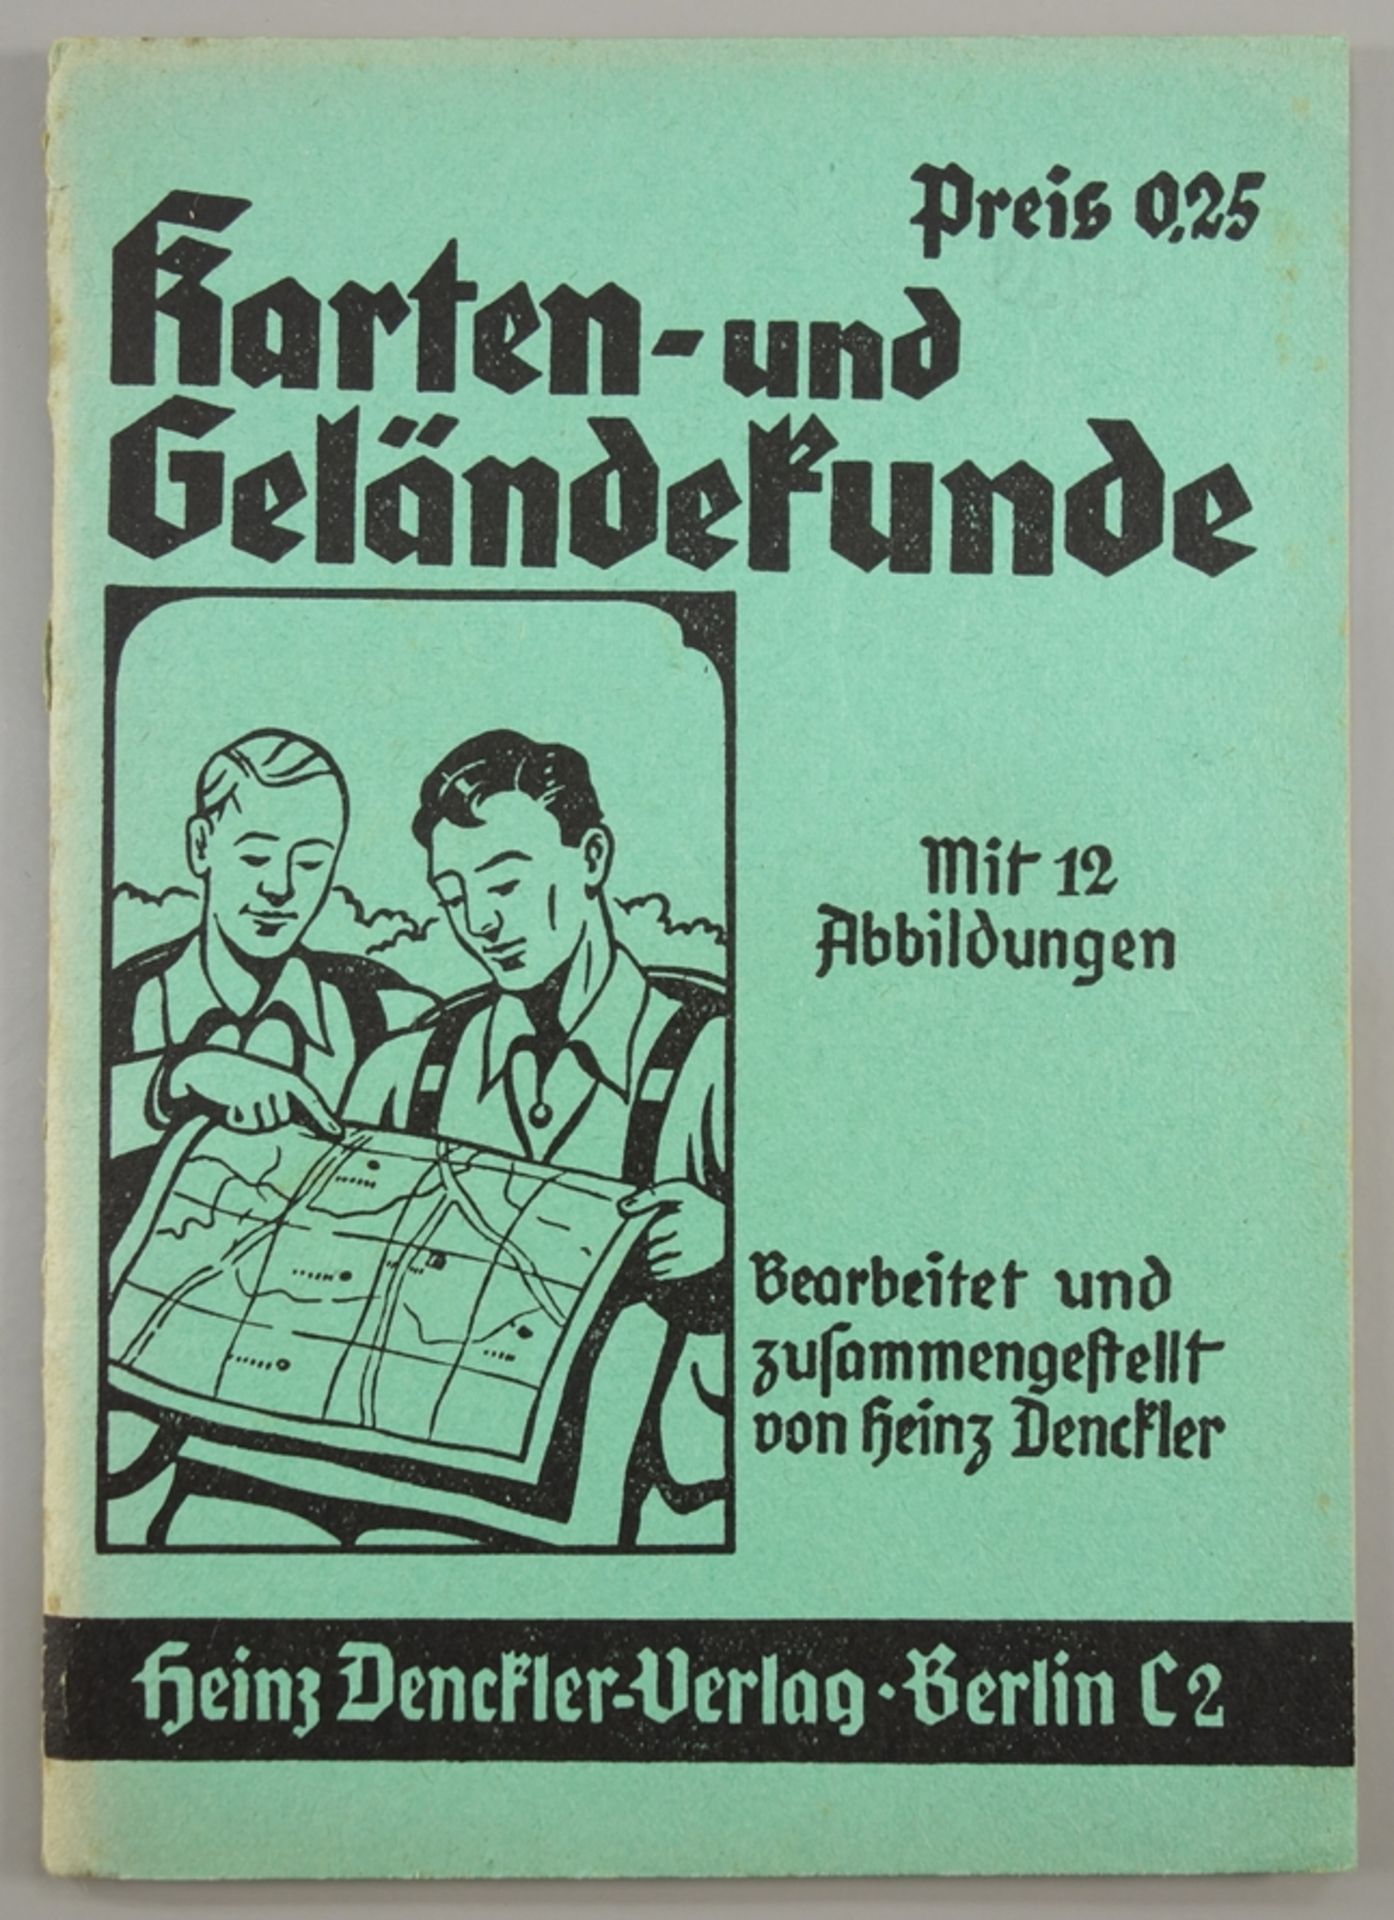 Karten- und Geländekunde, Heinz Denckler Verlag, Berlin, 1.Auflage, WK II, mit 12 Abbildungen,